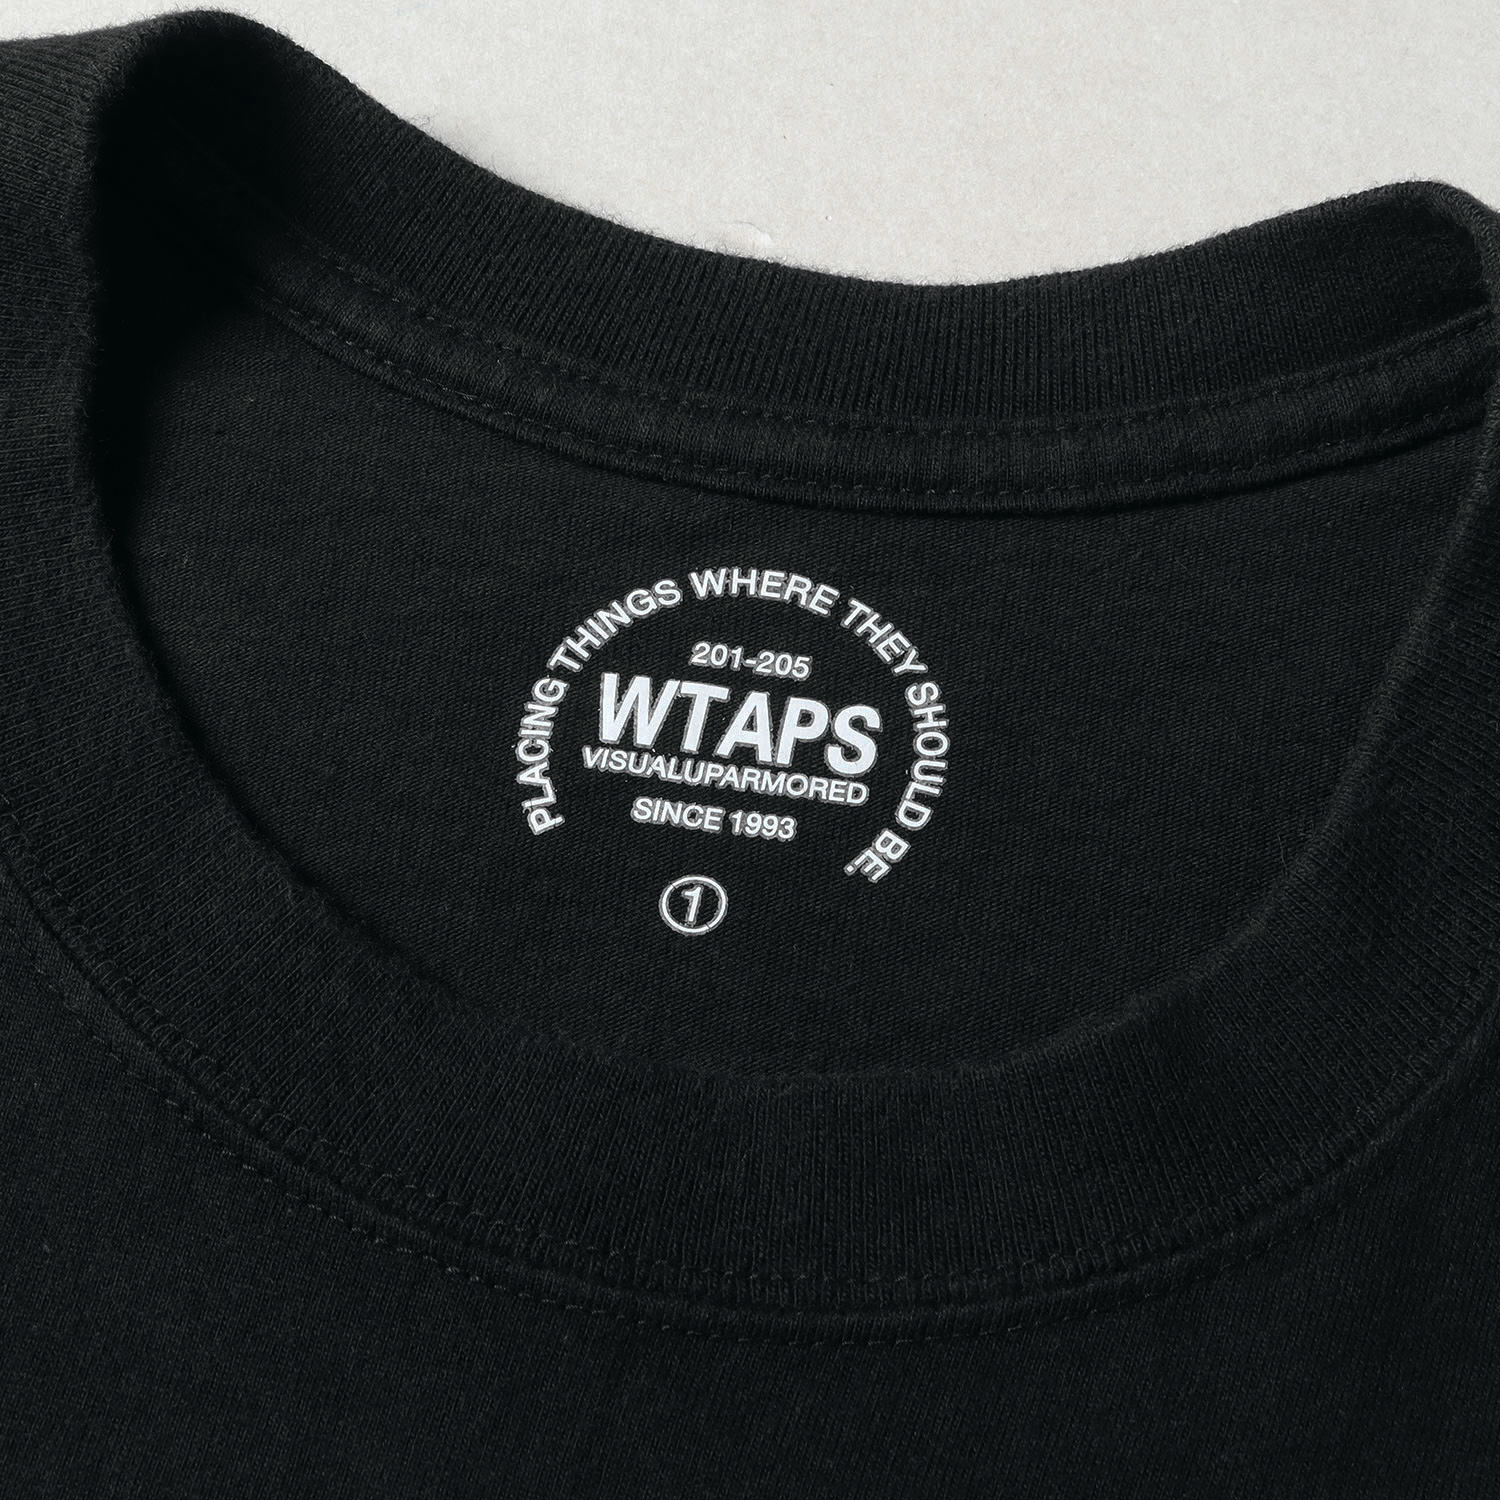 WTAPS ダブルタップス Tシャツ サイズ:S アーチロゴ クルーネックTシャツ ブラック 黒 トップス カットソー 半袖  【メンズ】【中古】【K3740】 | ブランド古着のBEEGLE by Boo-Bee